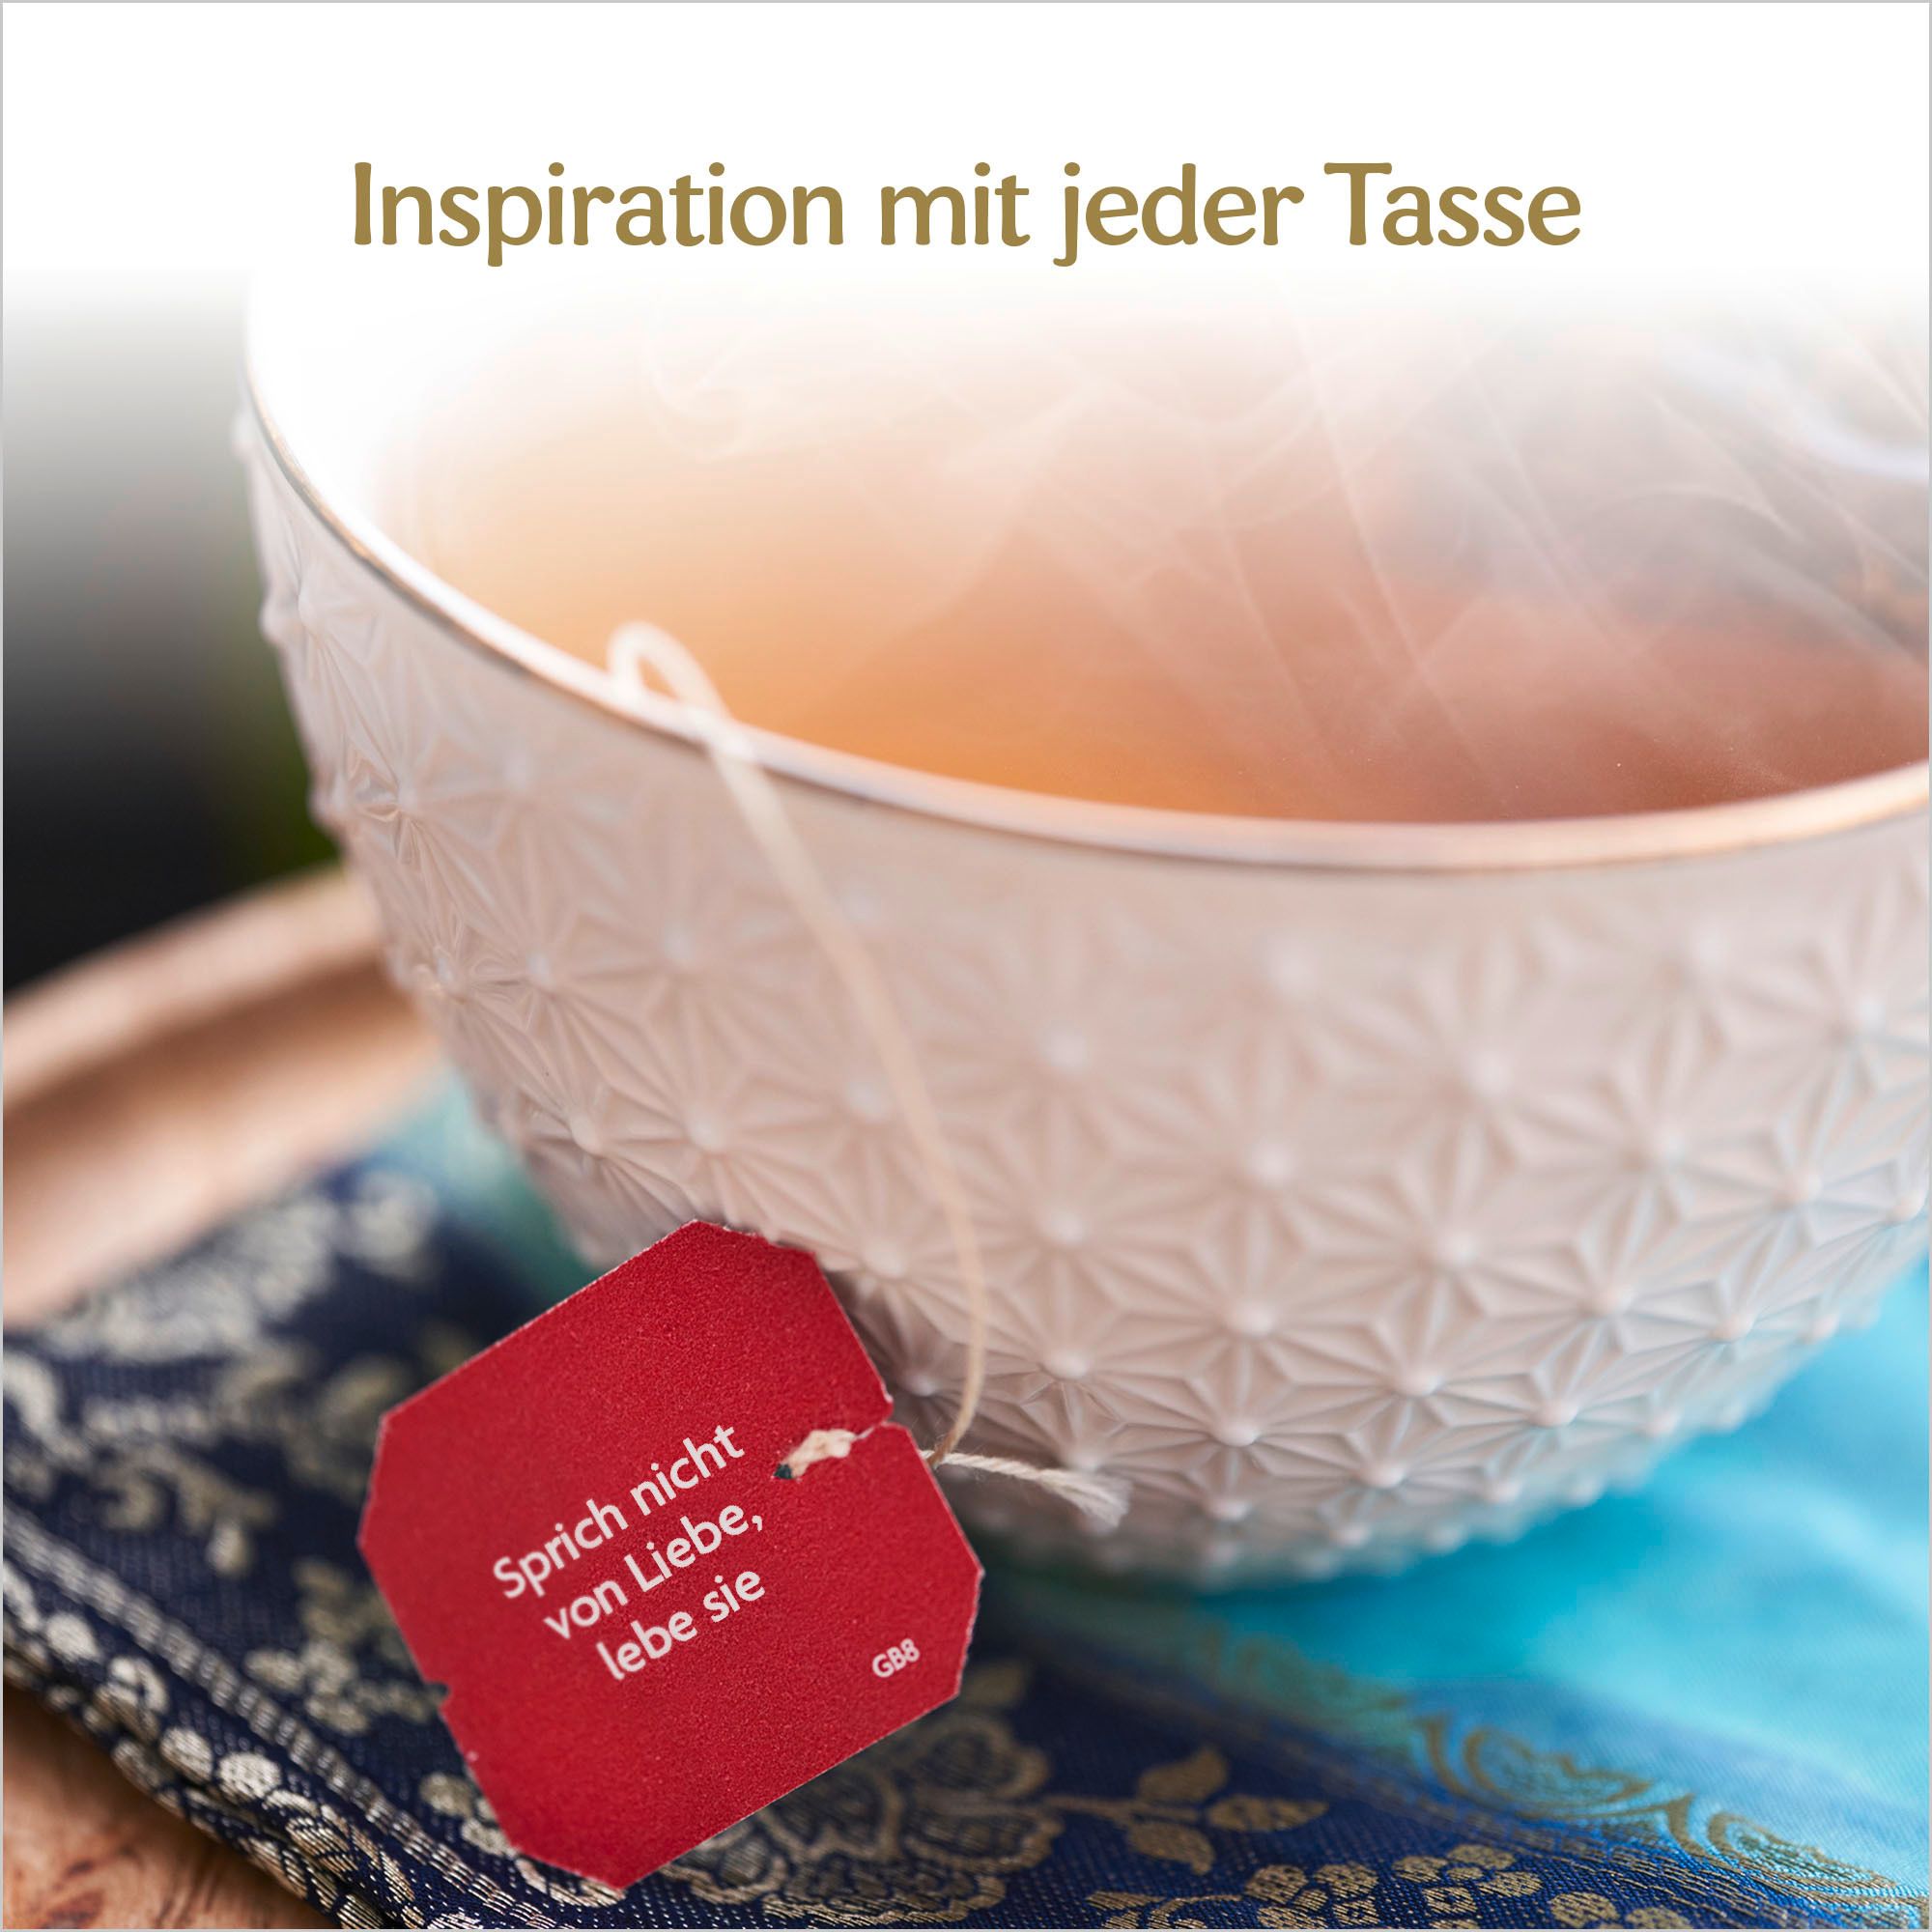 YOGI TEA® Klarer Geist, Bio Kräutertee